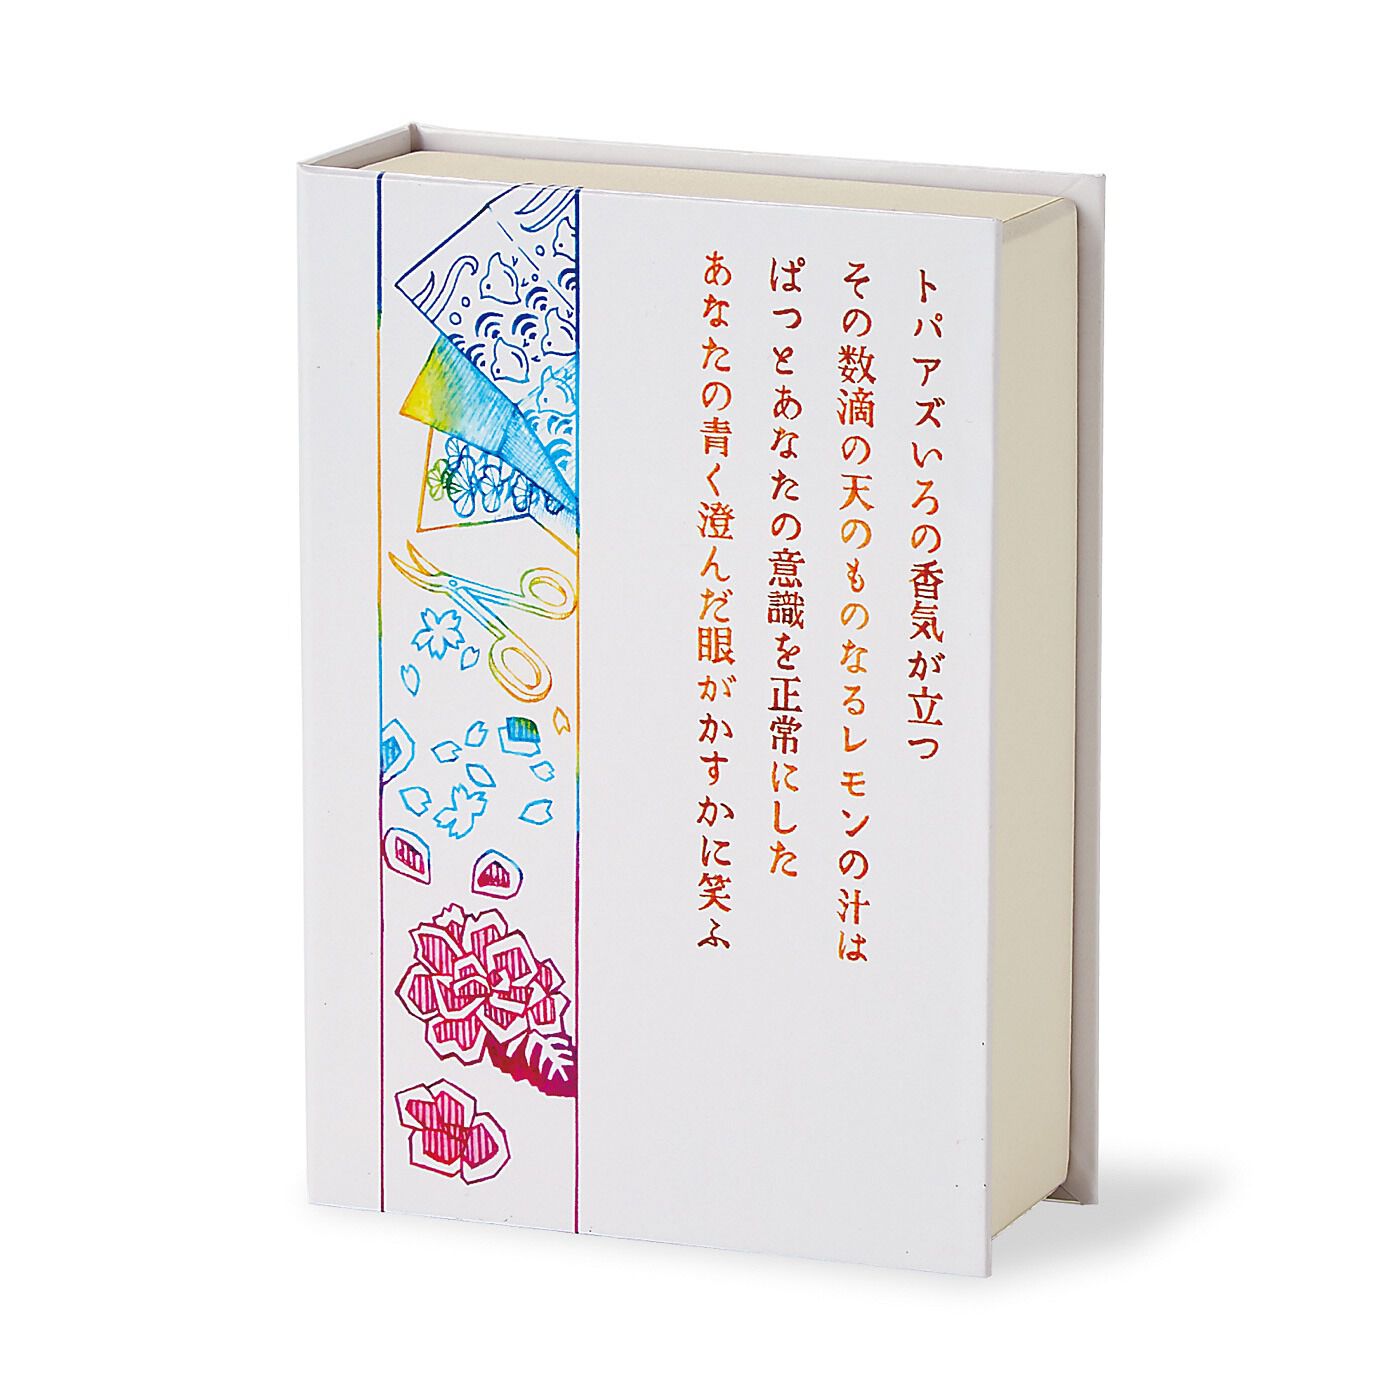 ミュージアム部|YOU+MORE!×ミュージアム部　日本近現代文学の世界に浸る 文学作品イメージティーの会|本物の文庫本とほぼ同じサイズの本型パッケージ。裏側には、着想もとになった原作の文章をデザインしました。